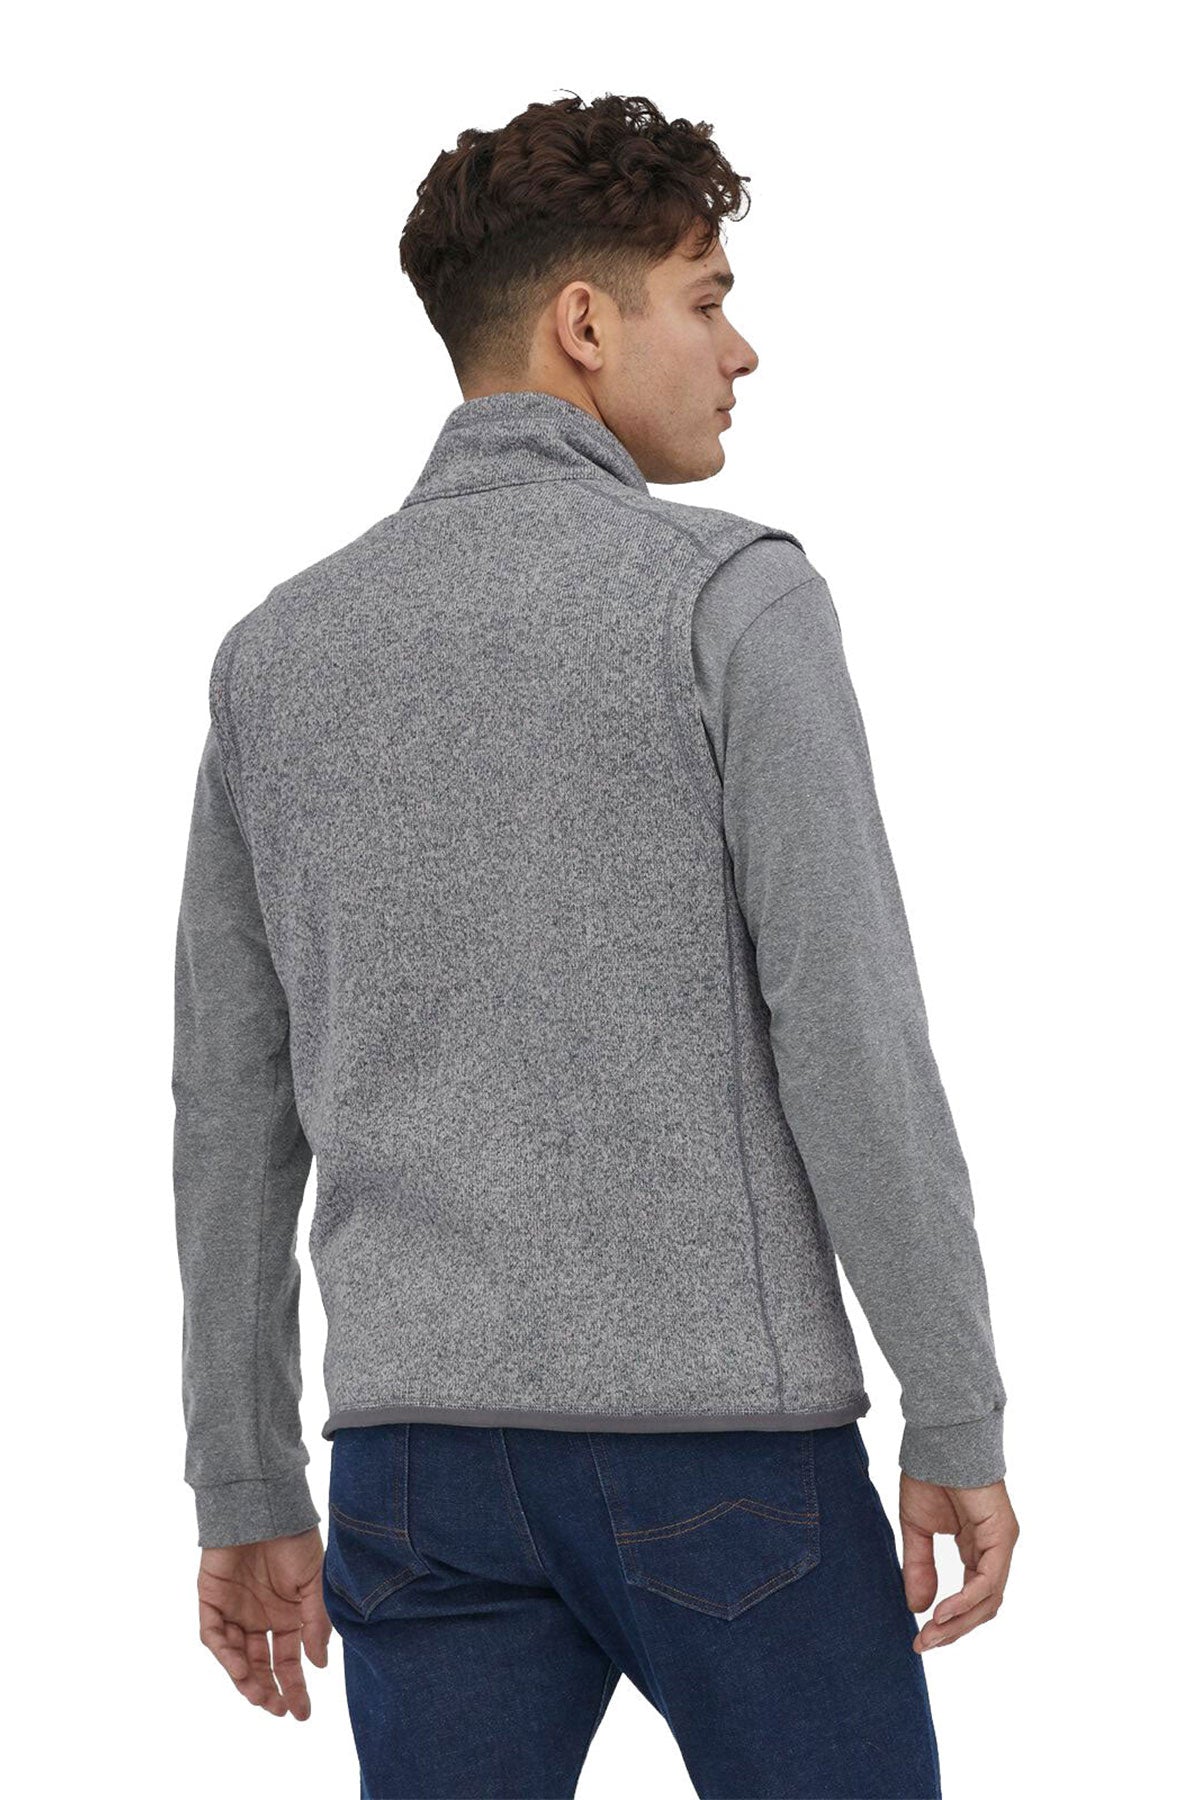 Patagonia Men's Better Sweater Fleece Vest in Black